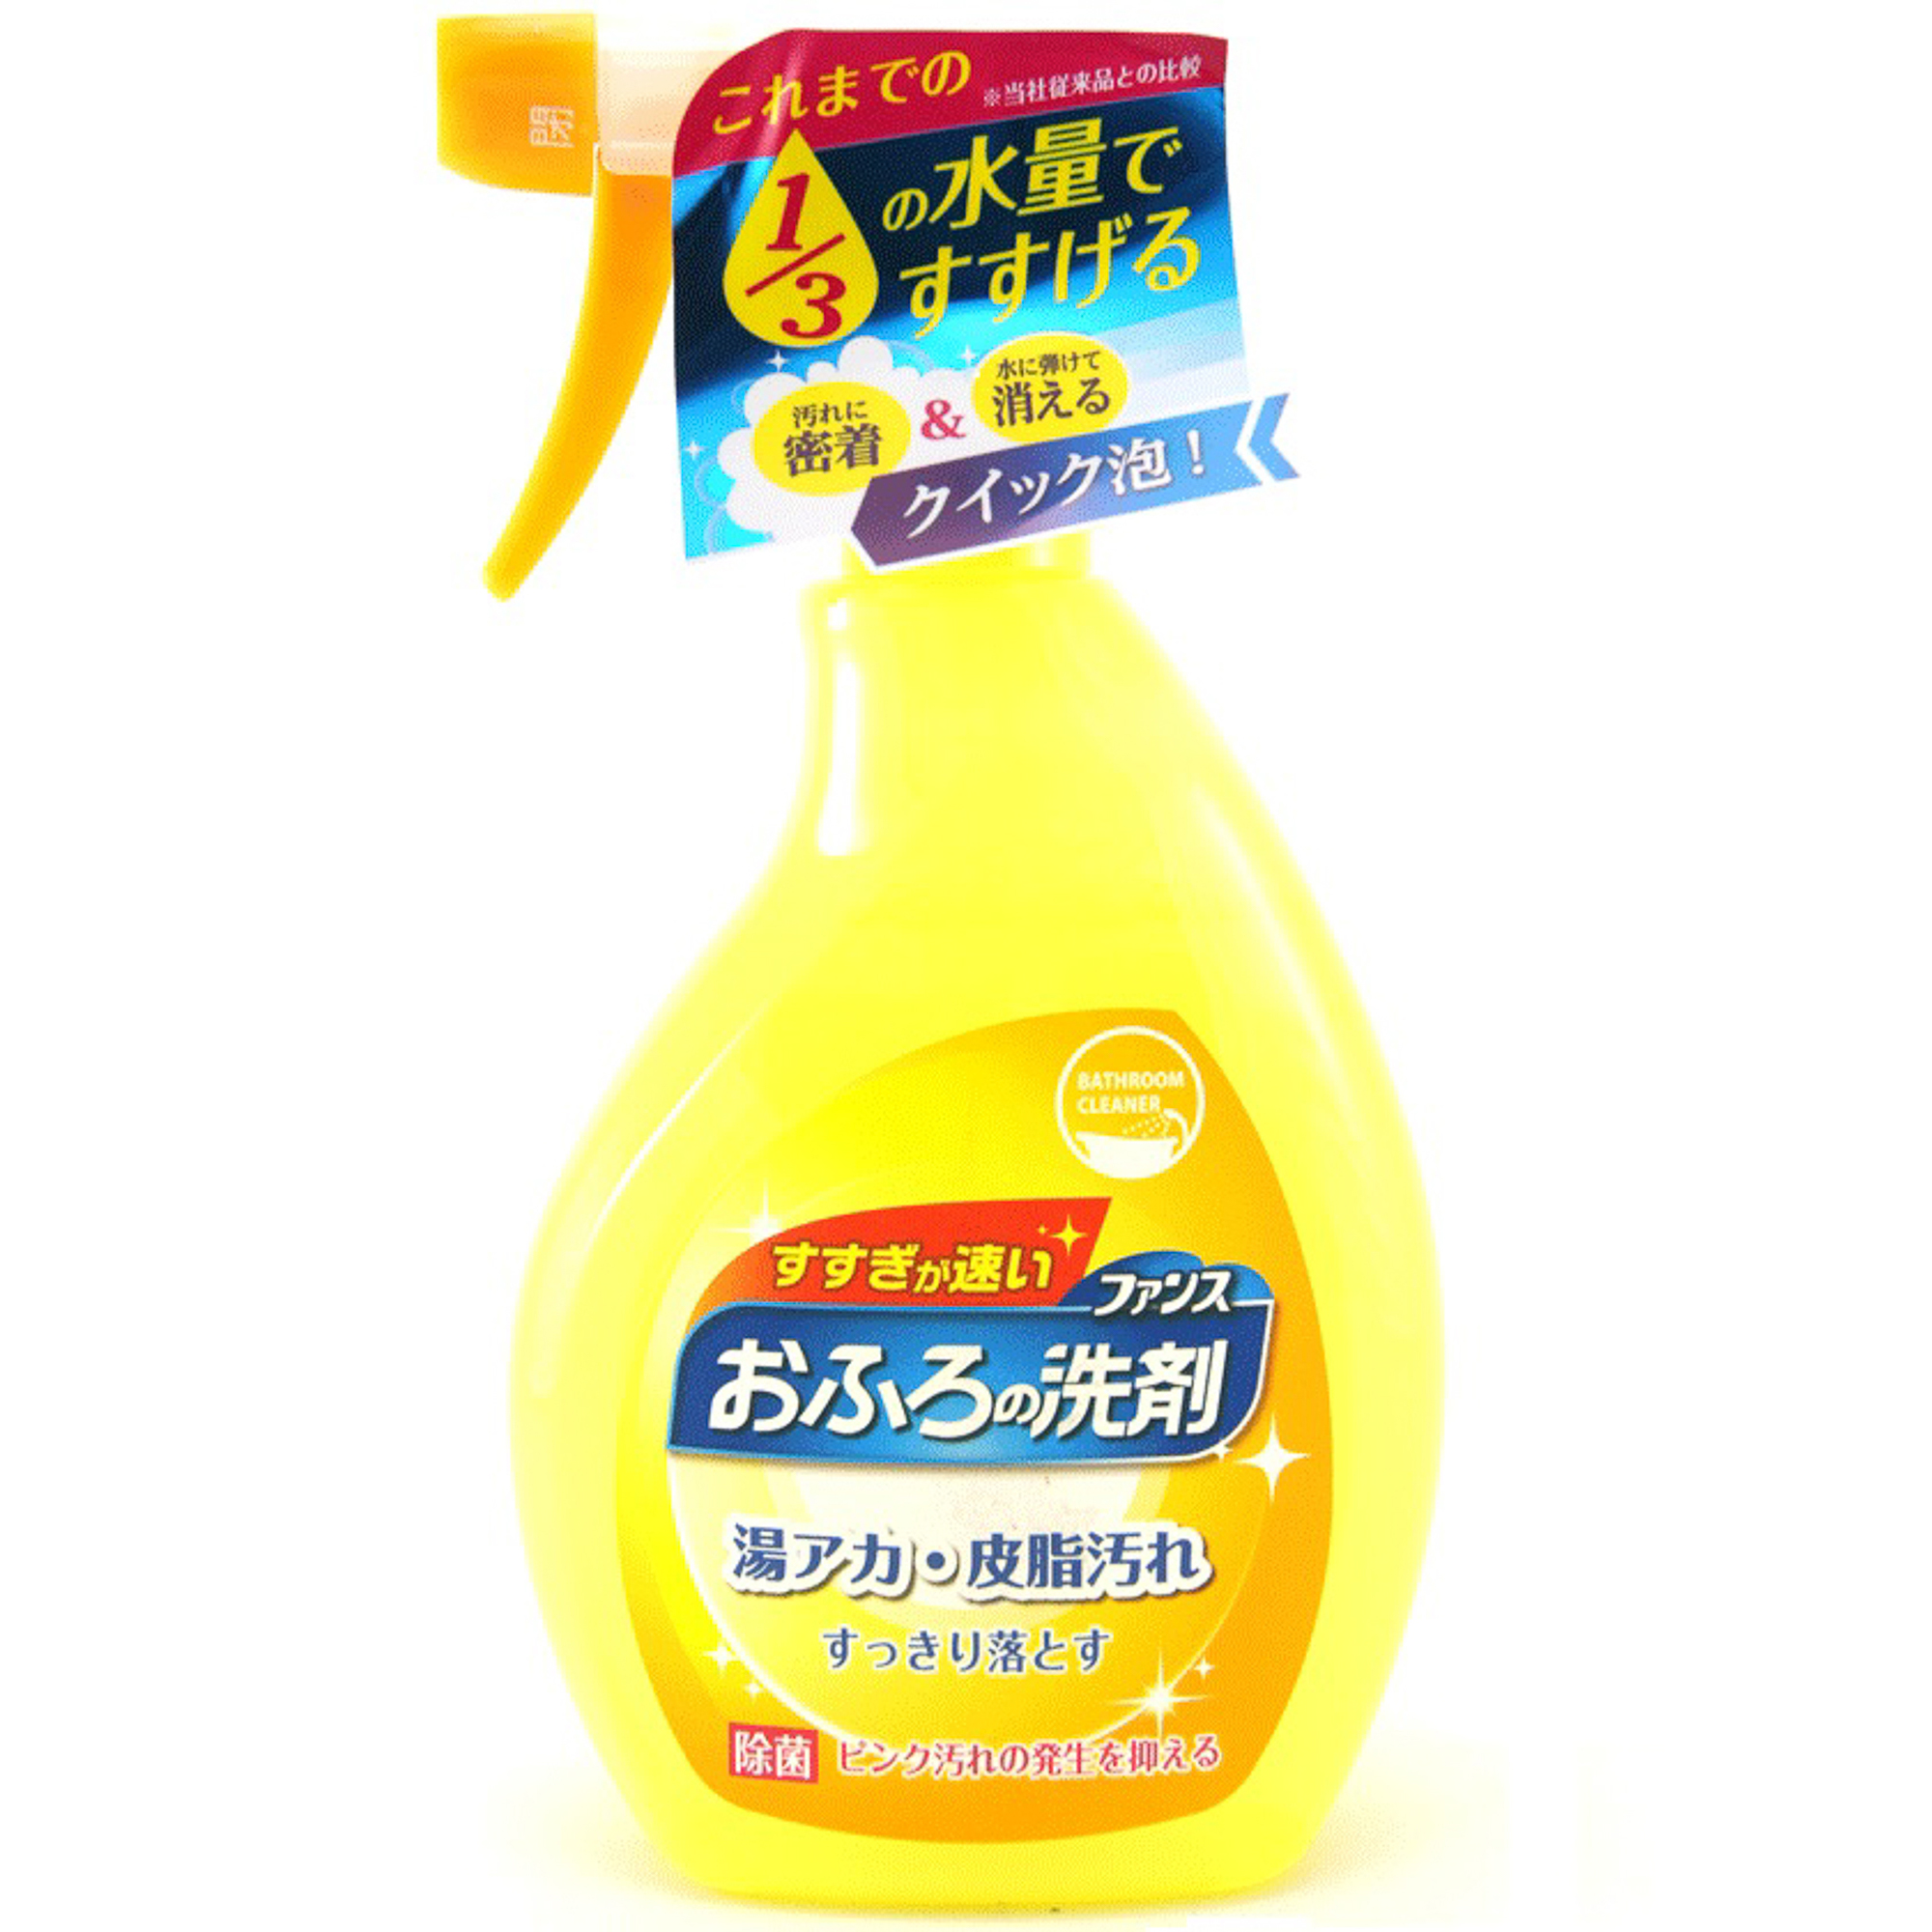 Спрей пенный Daiichi Ofuro для чистки в ванной комнате 380 мл спрей для чистки экранов мониторов 125мл hagerty